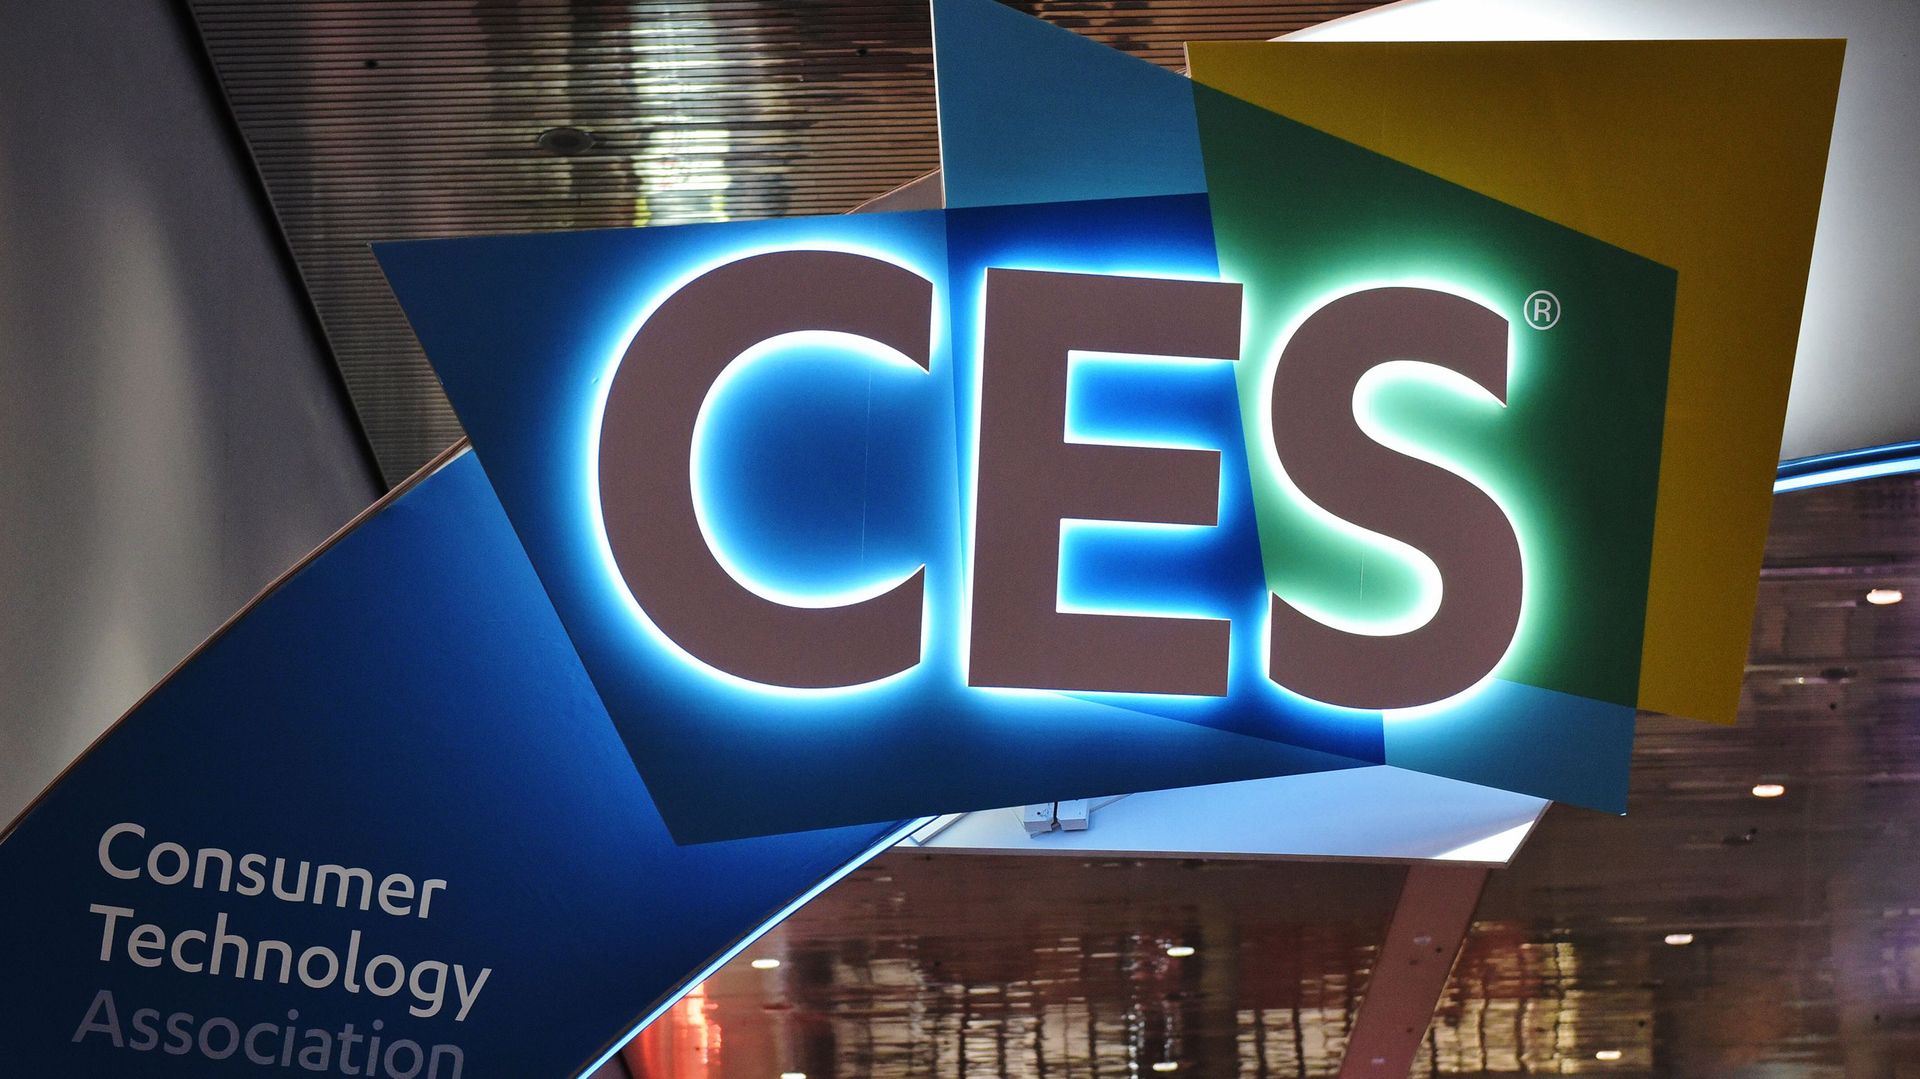 Du 7 au 10 janvier, le Consumer Electronics Show (CES) va accueillir à Las Vegas environ 175.000 visiteurs et plus de 4.500 exposants, qui présenteront des écrans toujours plus fins et souples, des robots toujours plus inventifs.